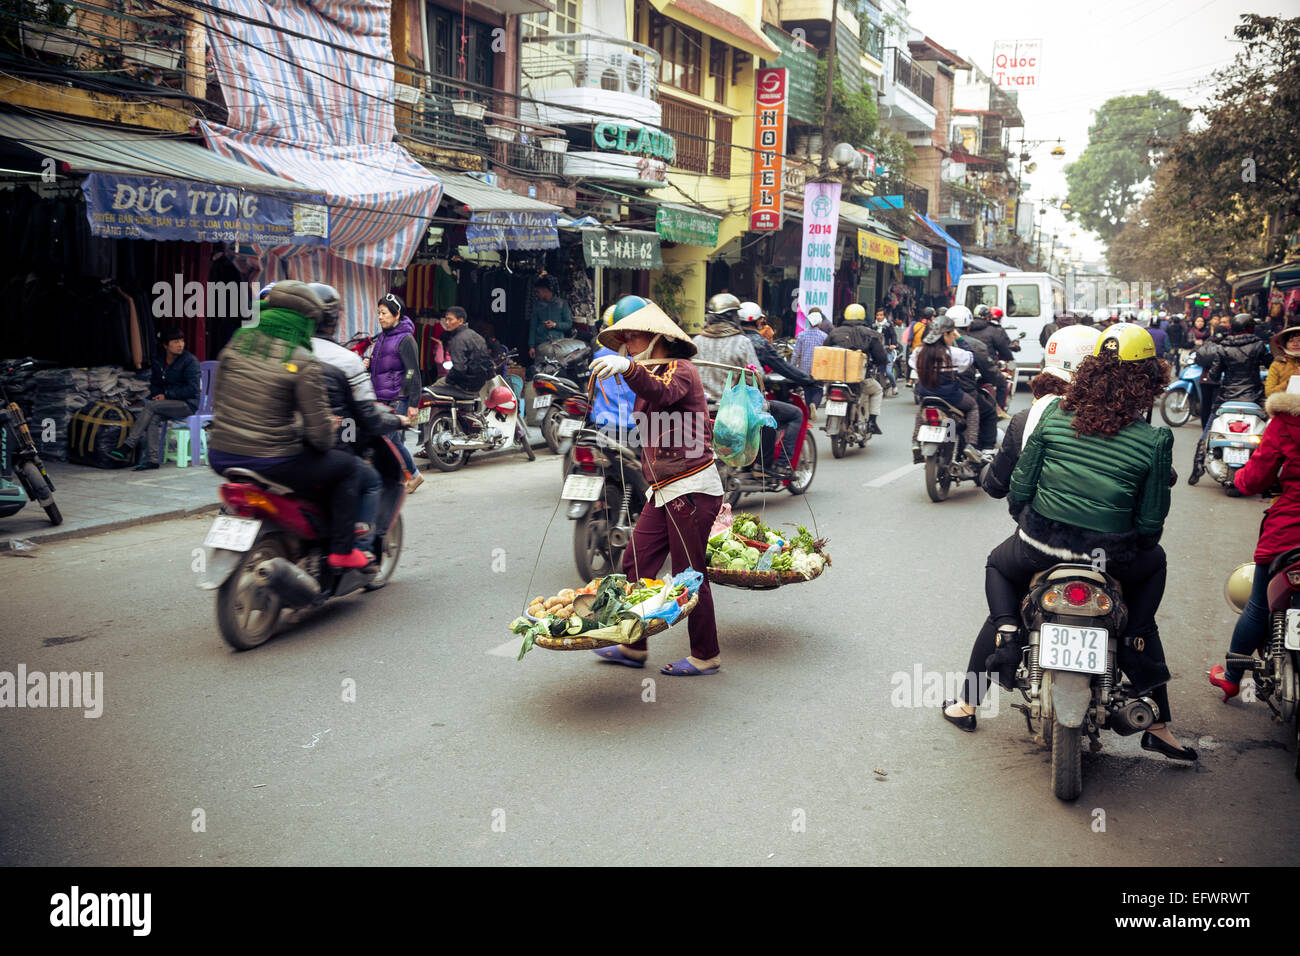 Escena callejera en el barrio antiguo de Hanoi, Vietnam. Foto de stock